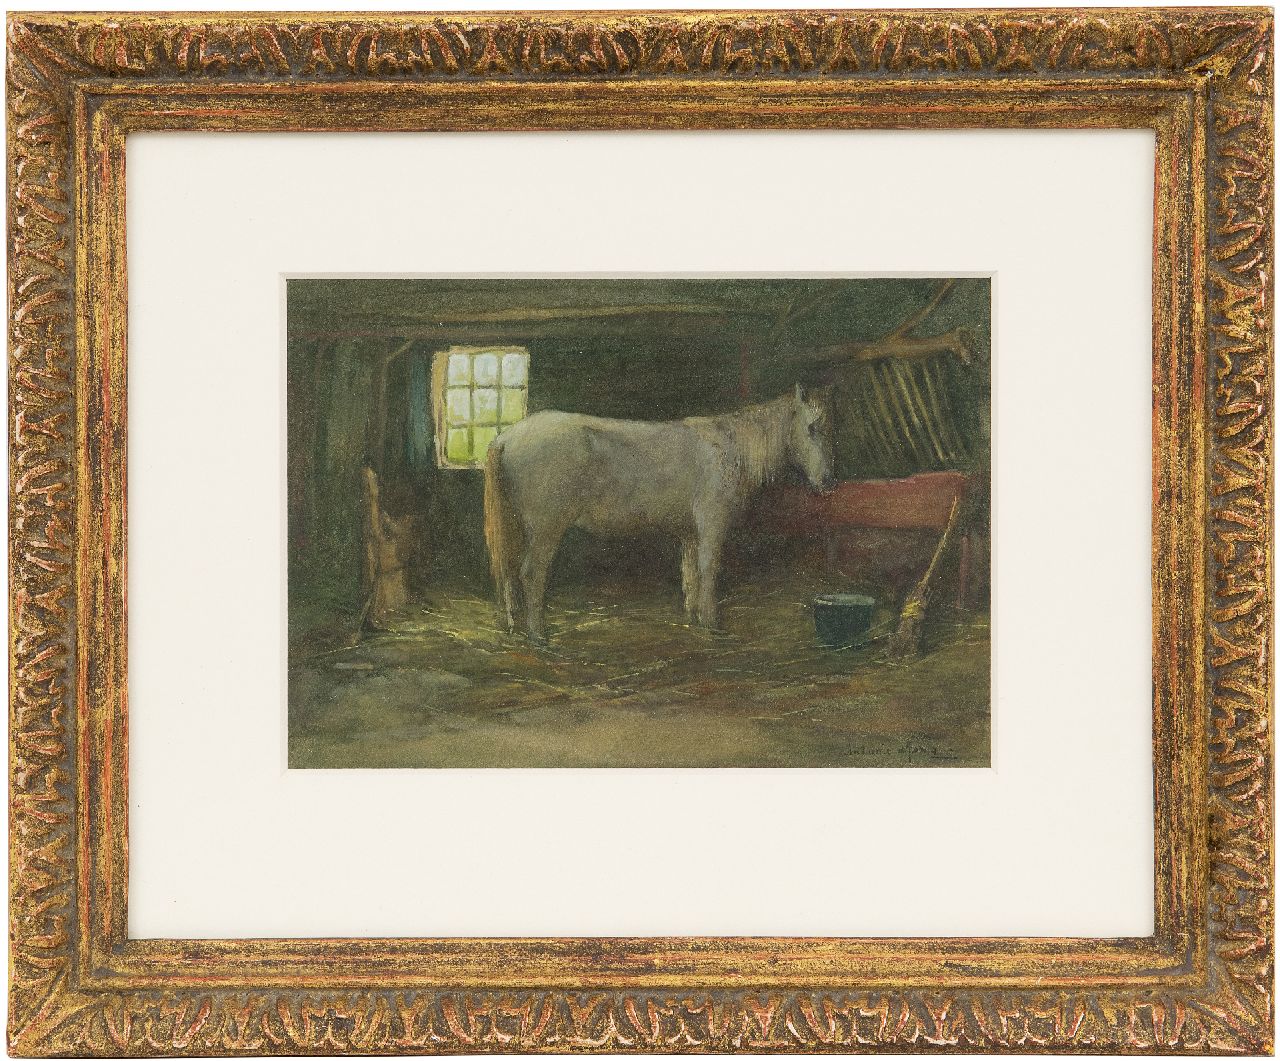 Jong A.G. de | 'Antonie' Gerardus de Jong | Aquarellen en tekeningen te koop aangeboden | Schimmel in een stal, aquarel op papier 13,6 x 19,6 cm, gesigneerd rechtsonder